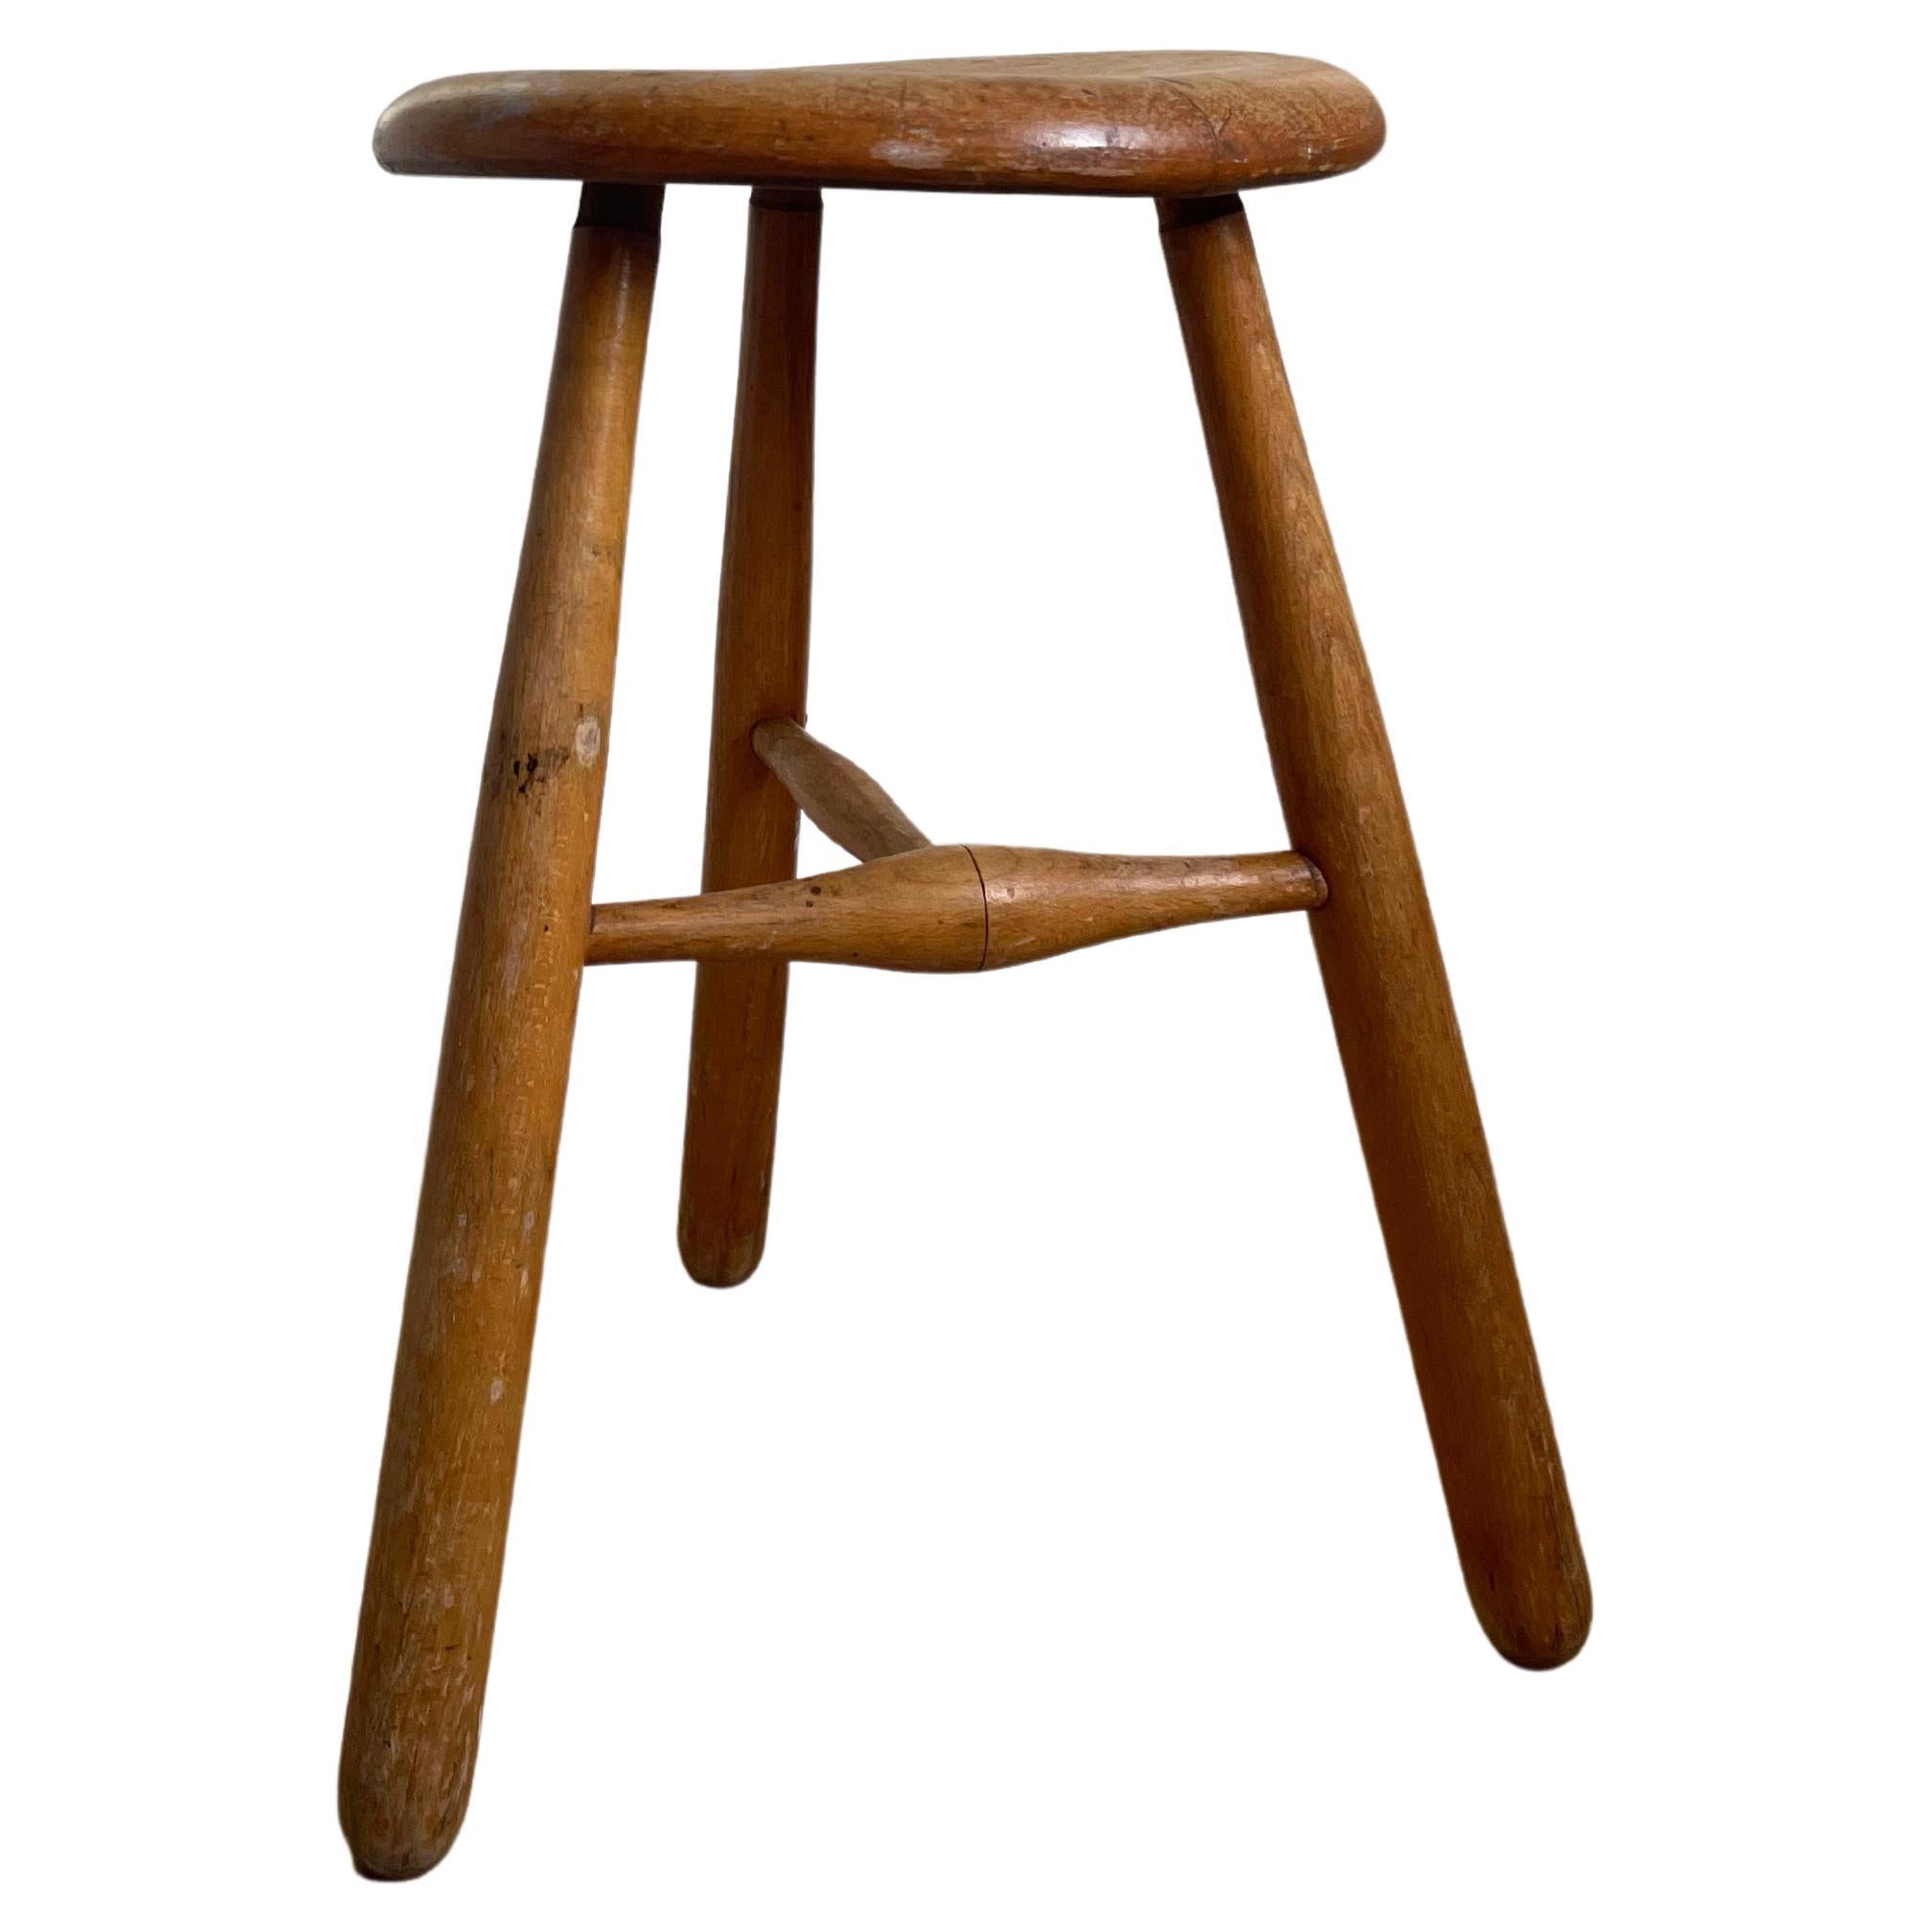 Rustic Swedish Vintage Wooden Three Legged Stool, Side Table, 1950s